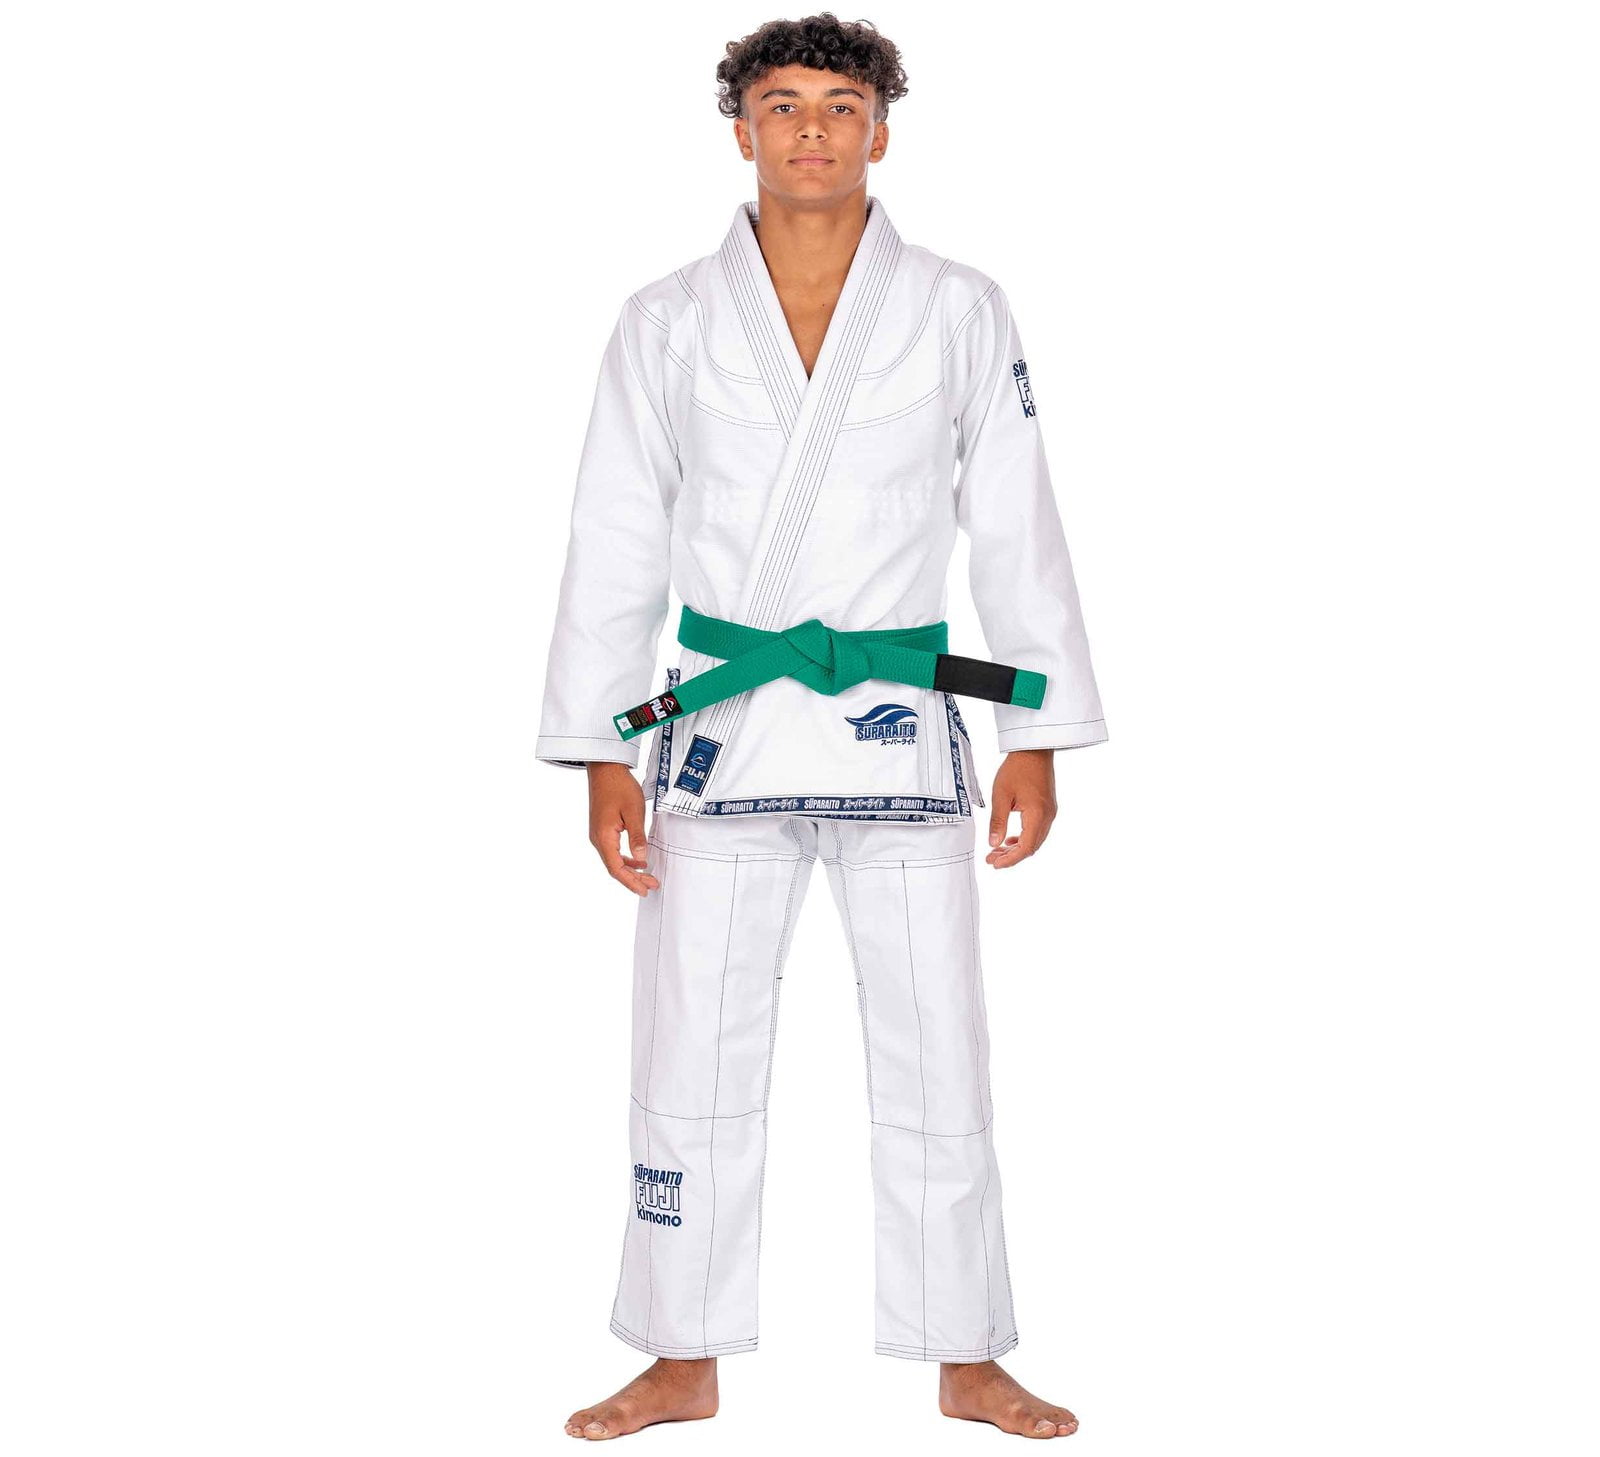 Professional Quality Martial Brazilian Jiu Jitsu Belts No Tax,FREE SHIPPING 